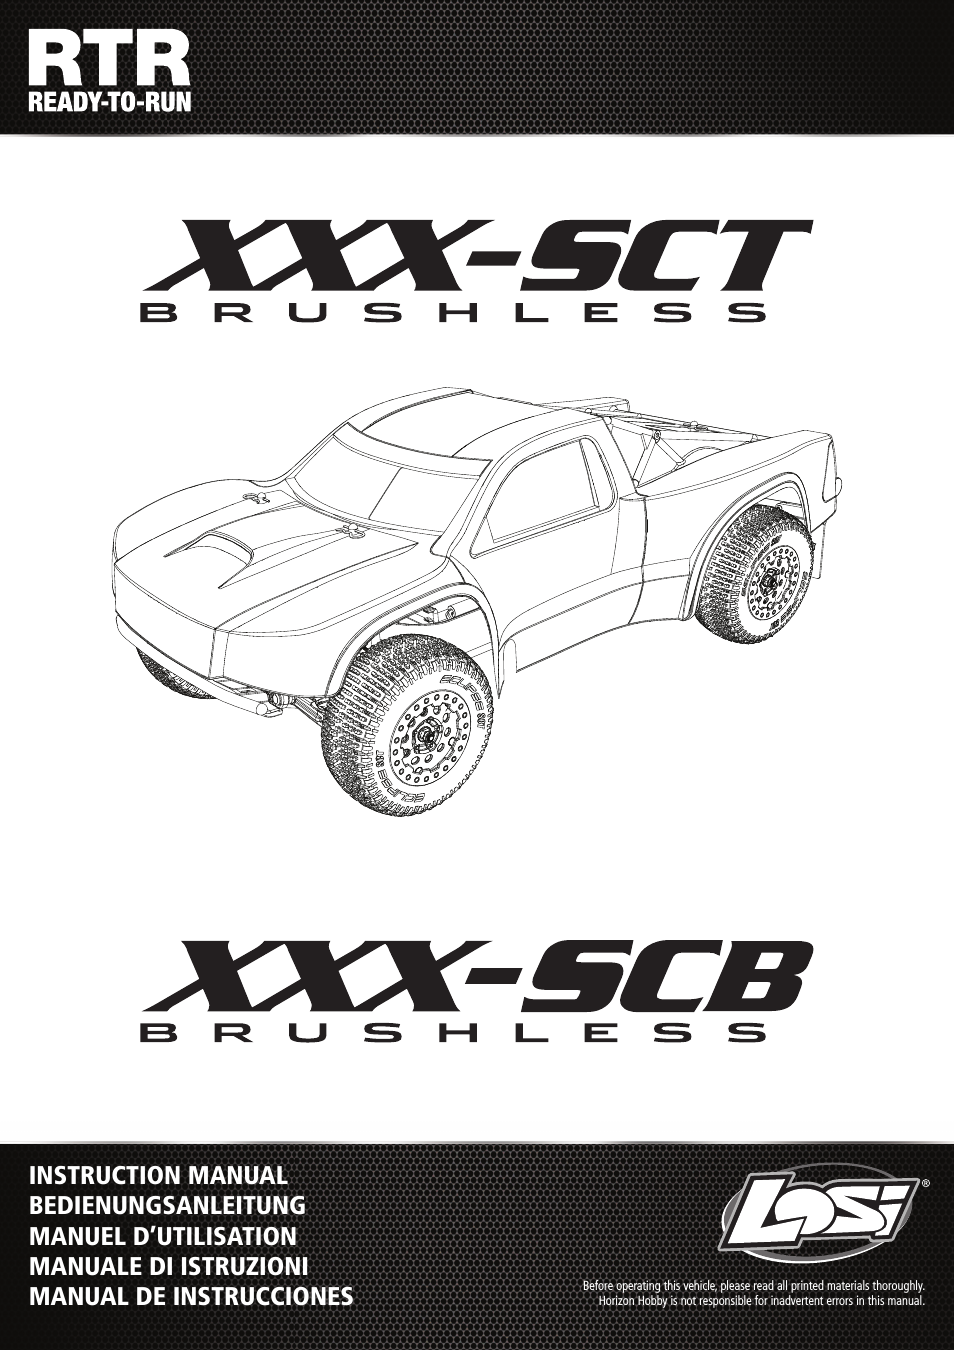 LOS03003 XXX-SCB Brushless RTR